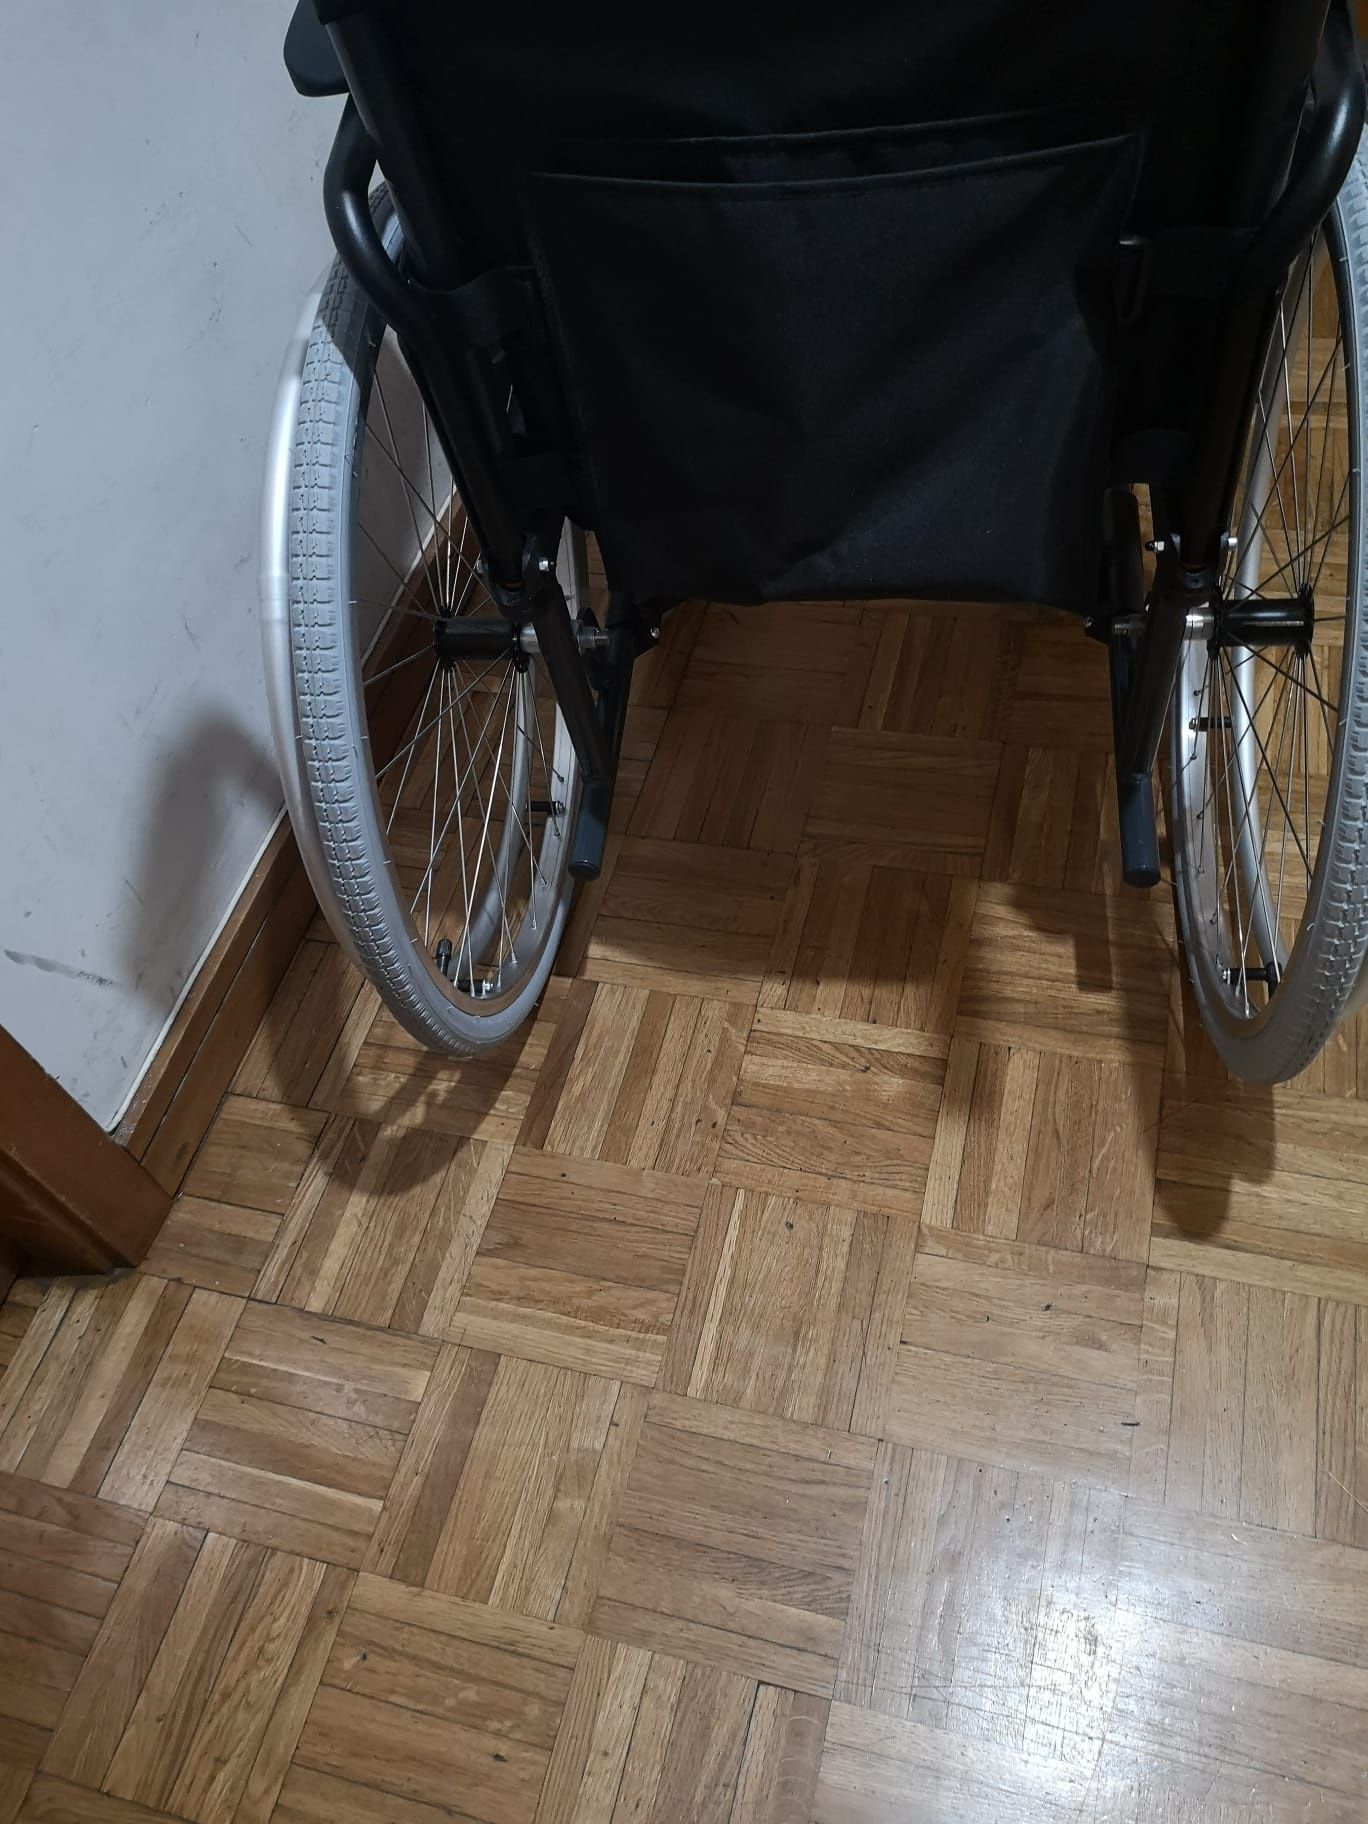 Vendo cadeira de rodas